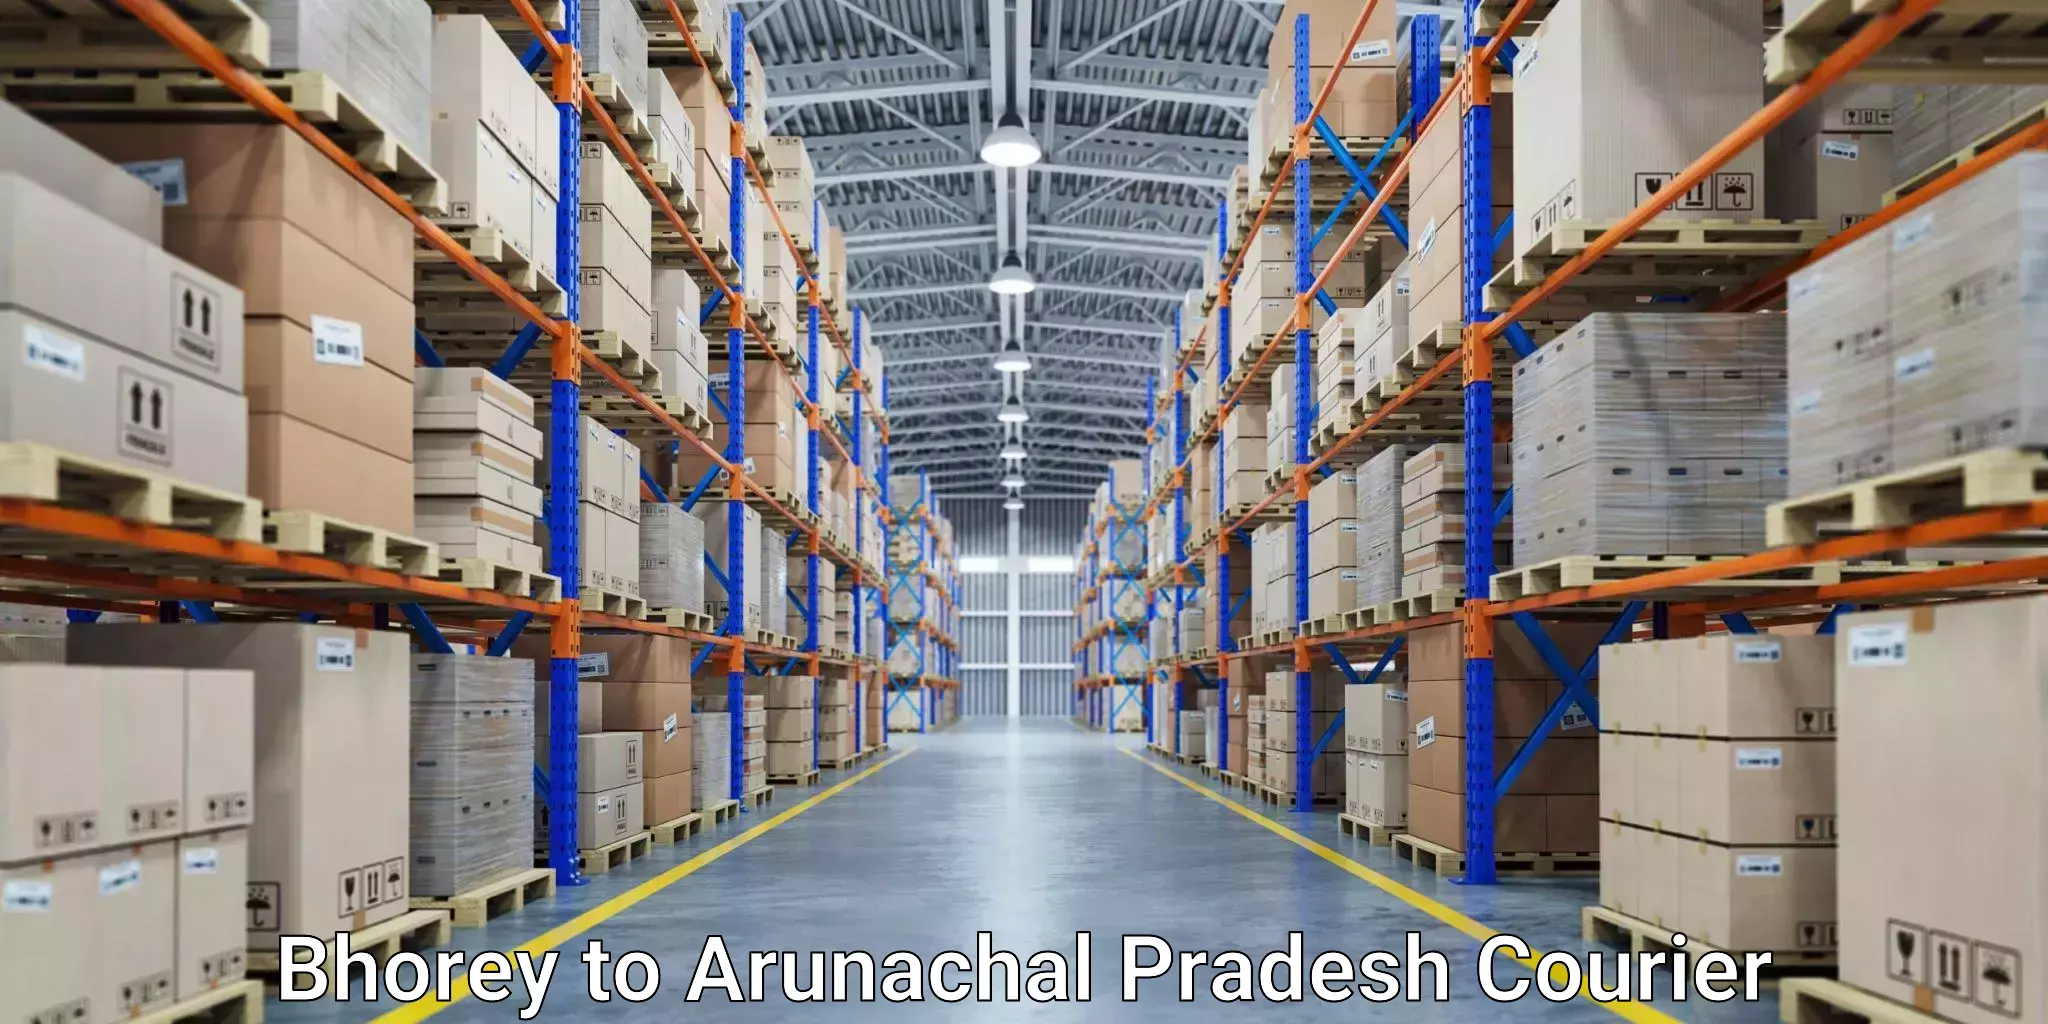 Specialized courier services Bhorey to Arunachal Pradesh